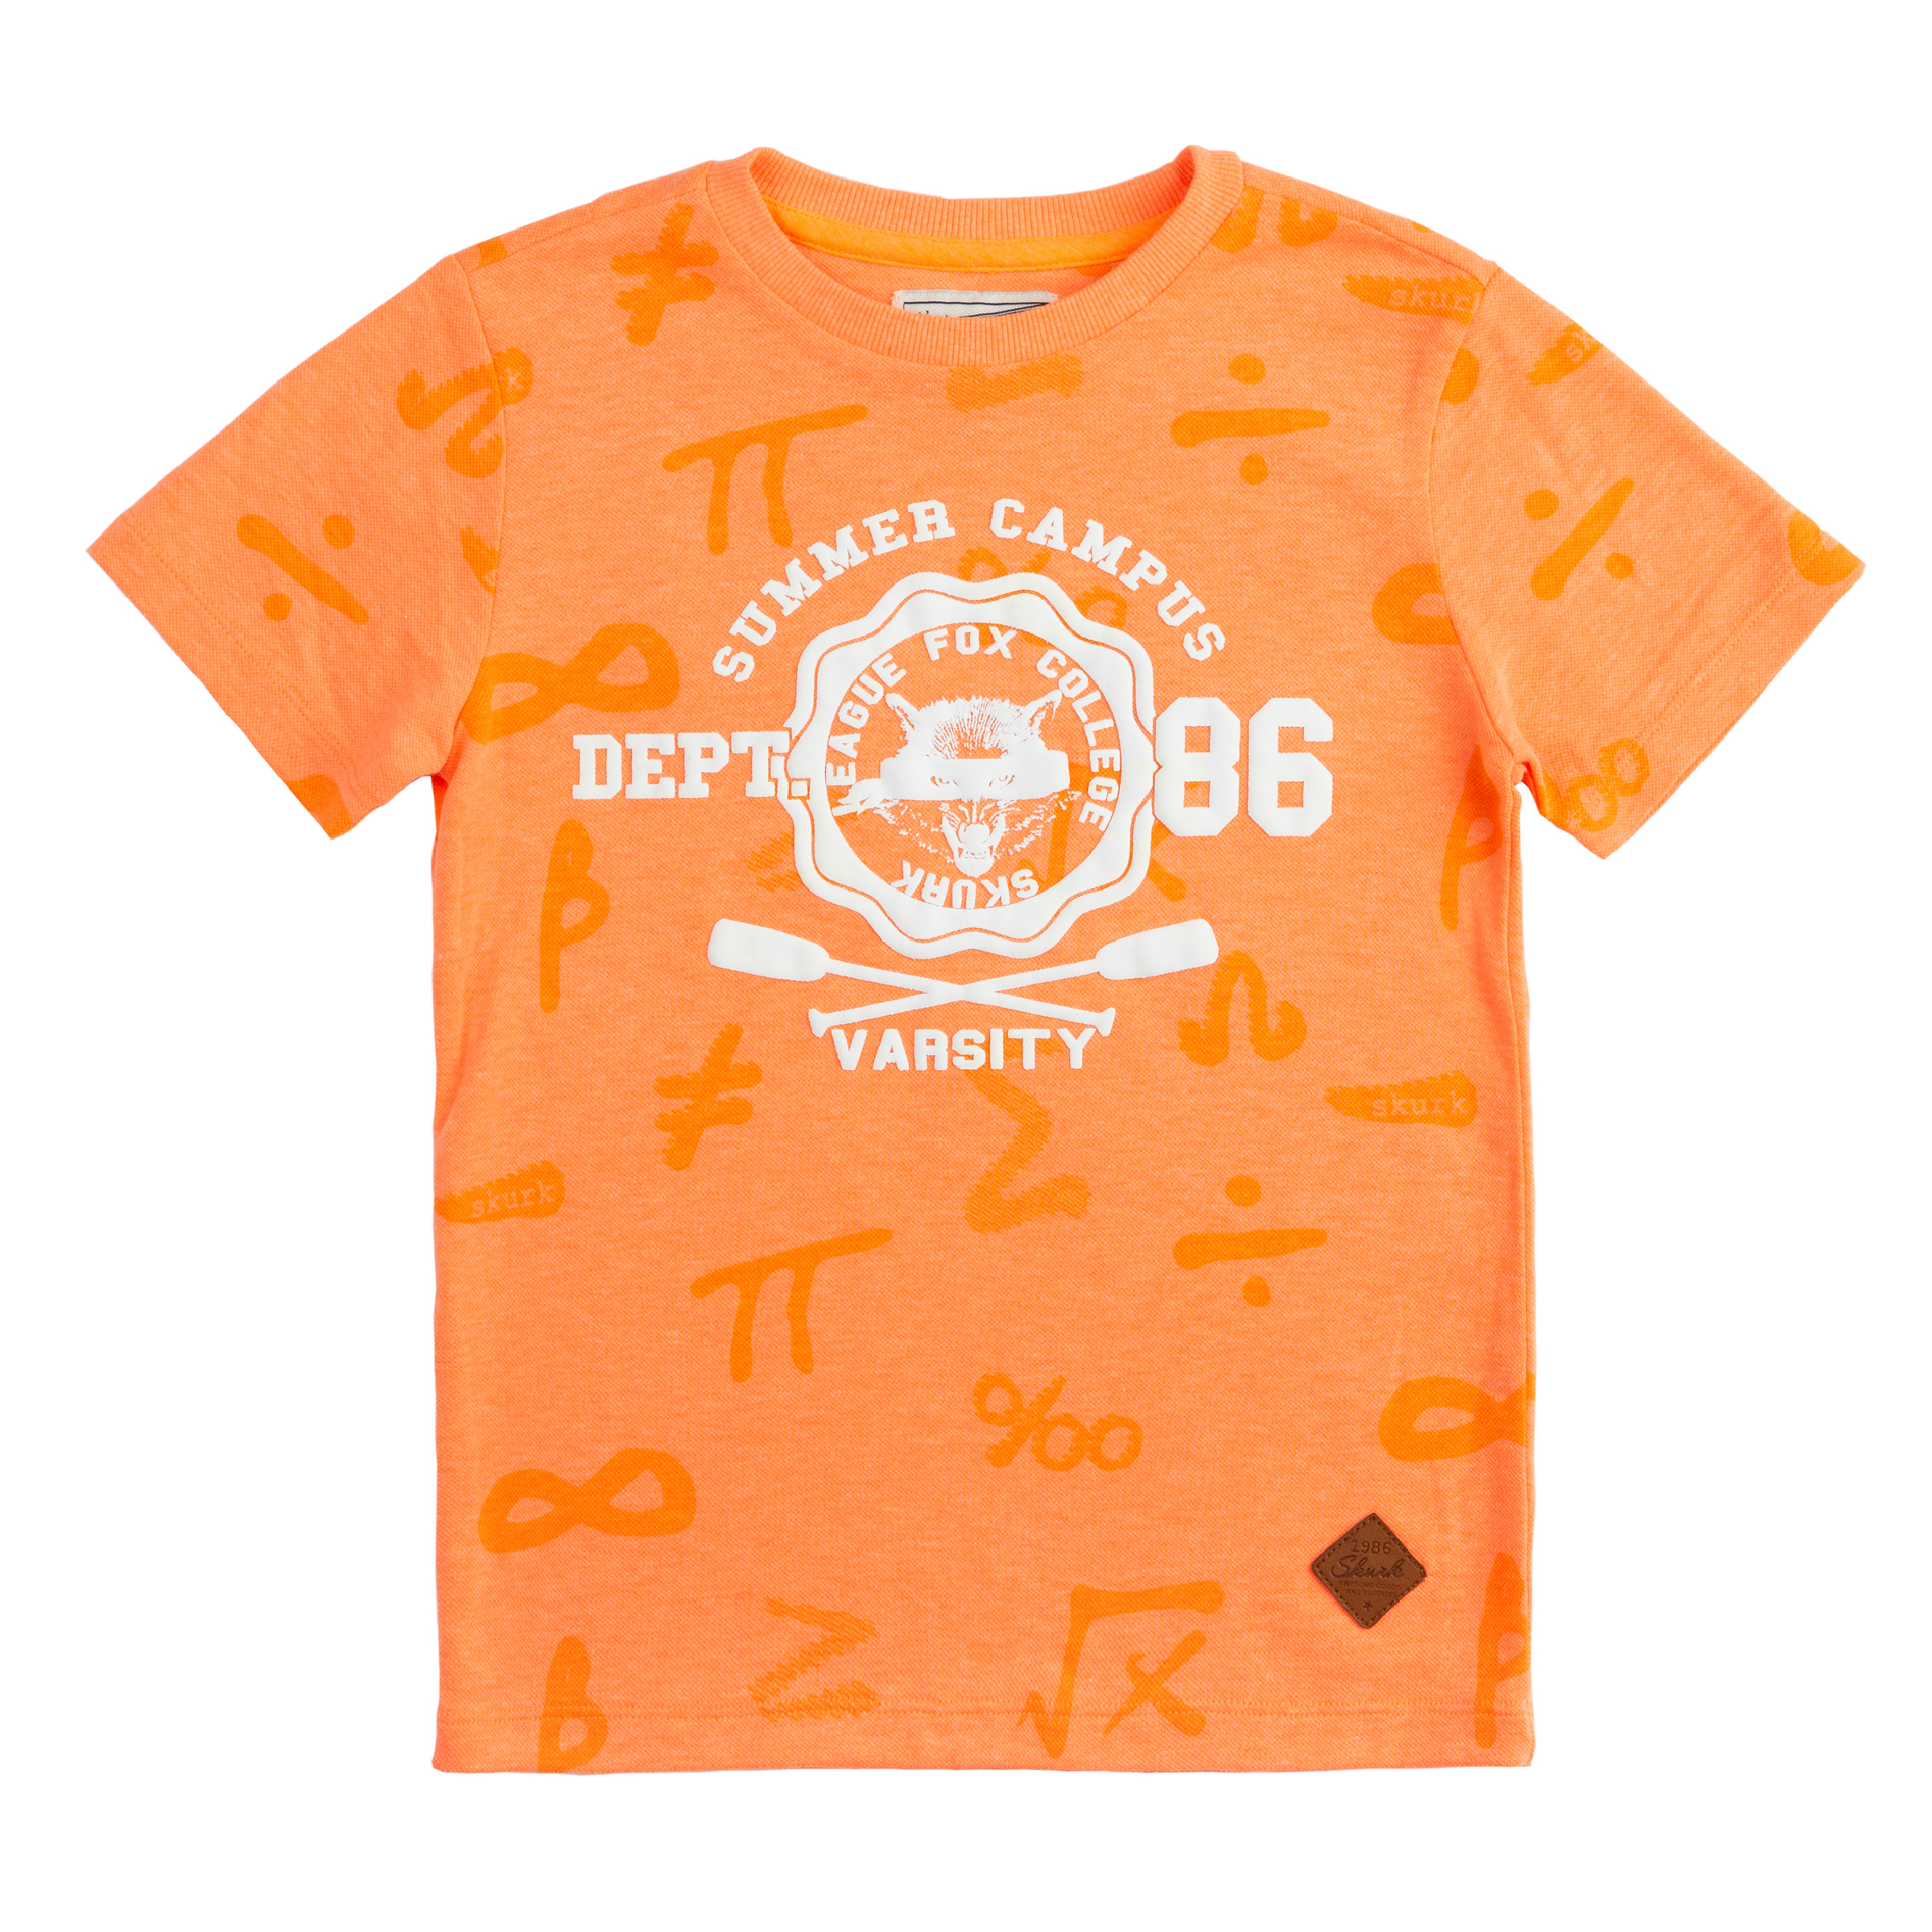 Jongens T-shirt Trenton van Skurk in de kleur Light Orange in maat 164, 170.